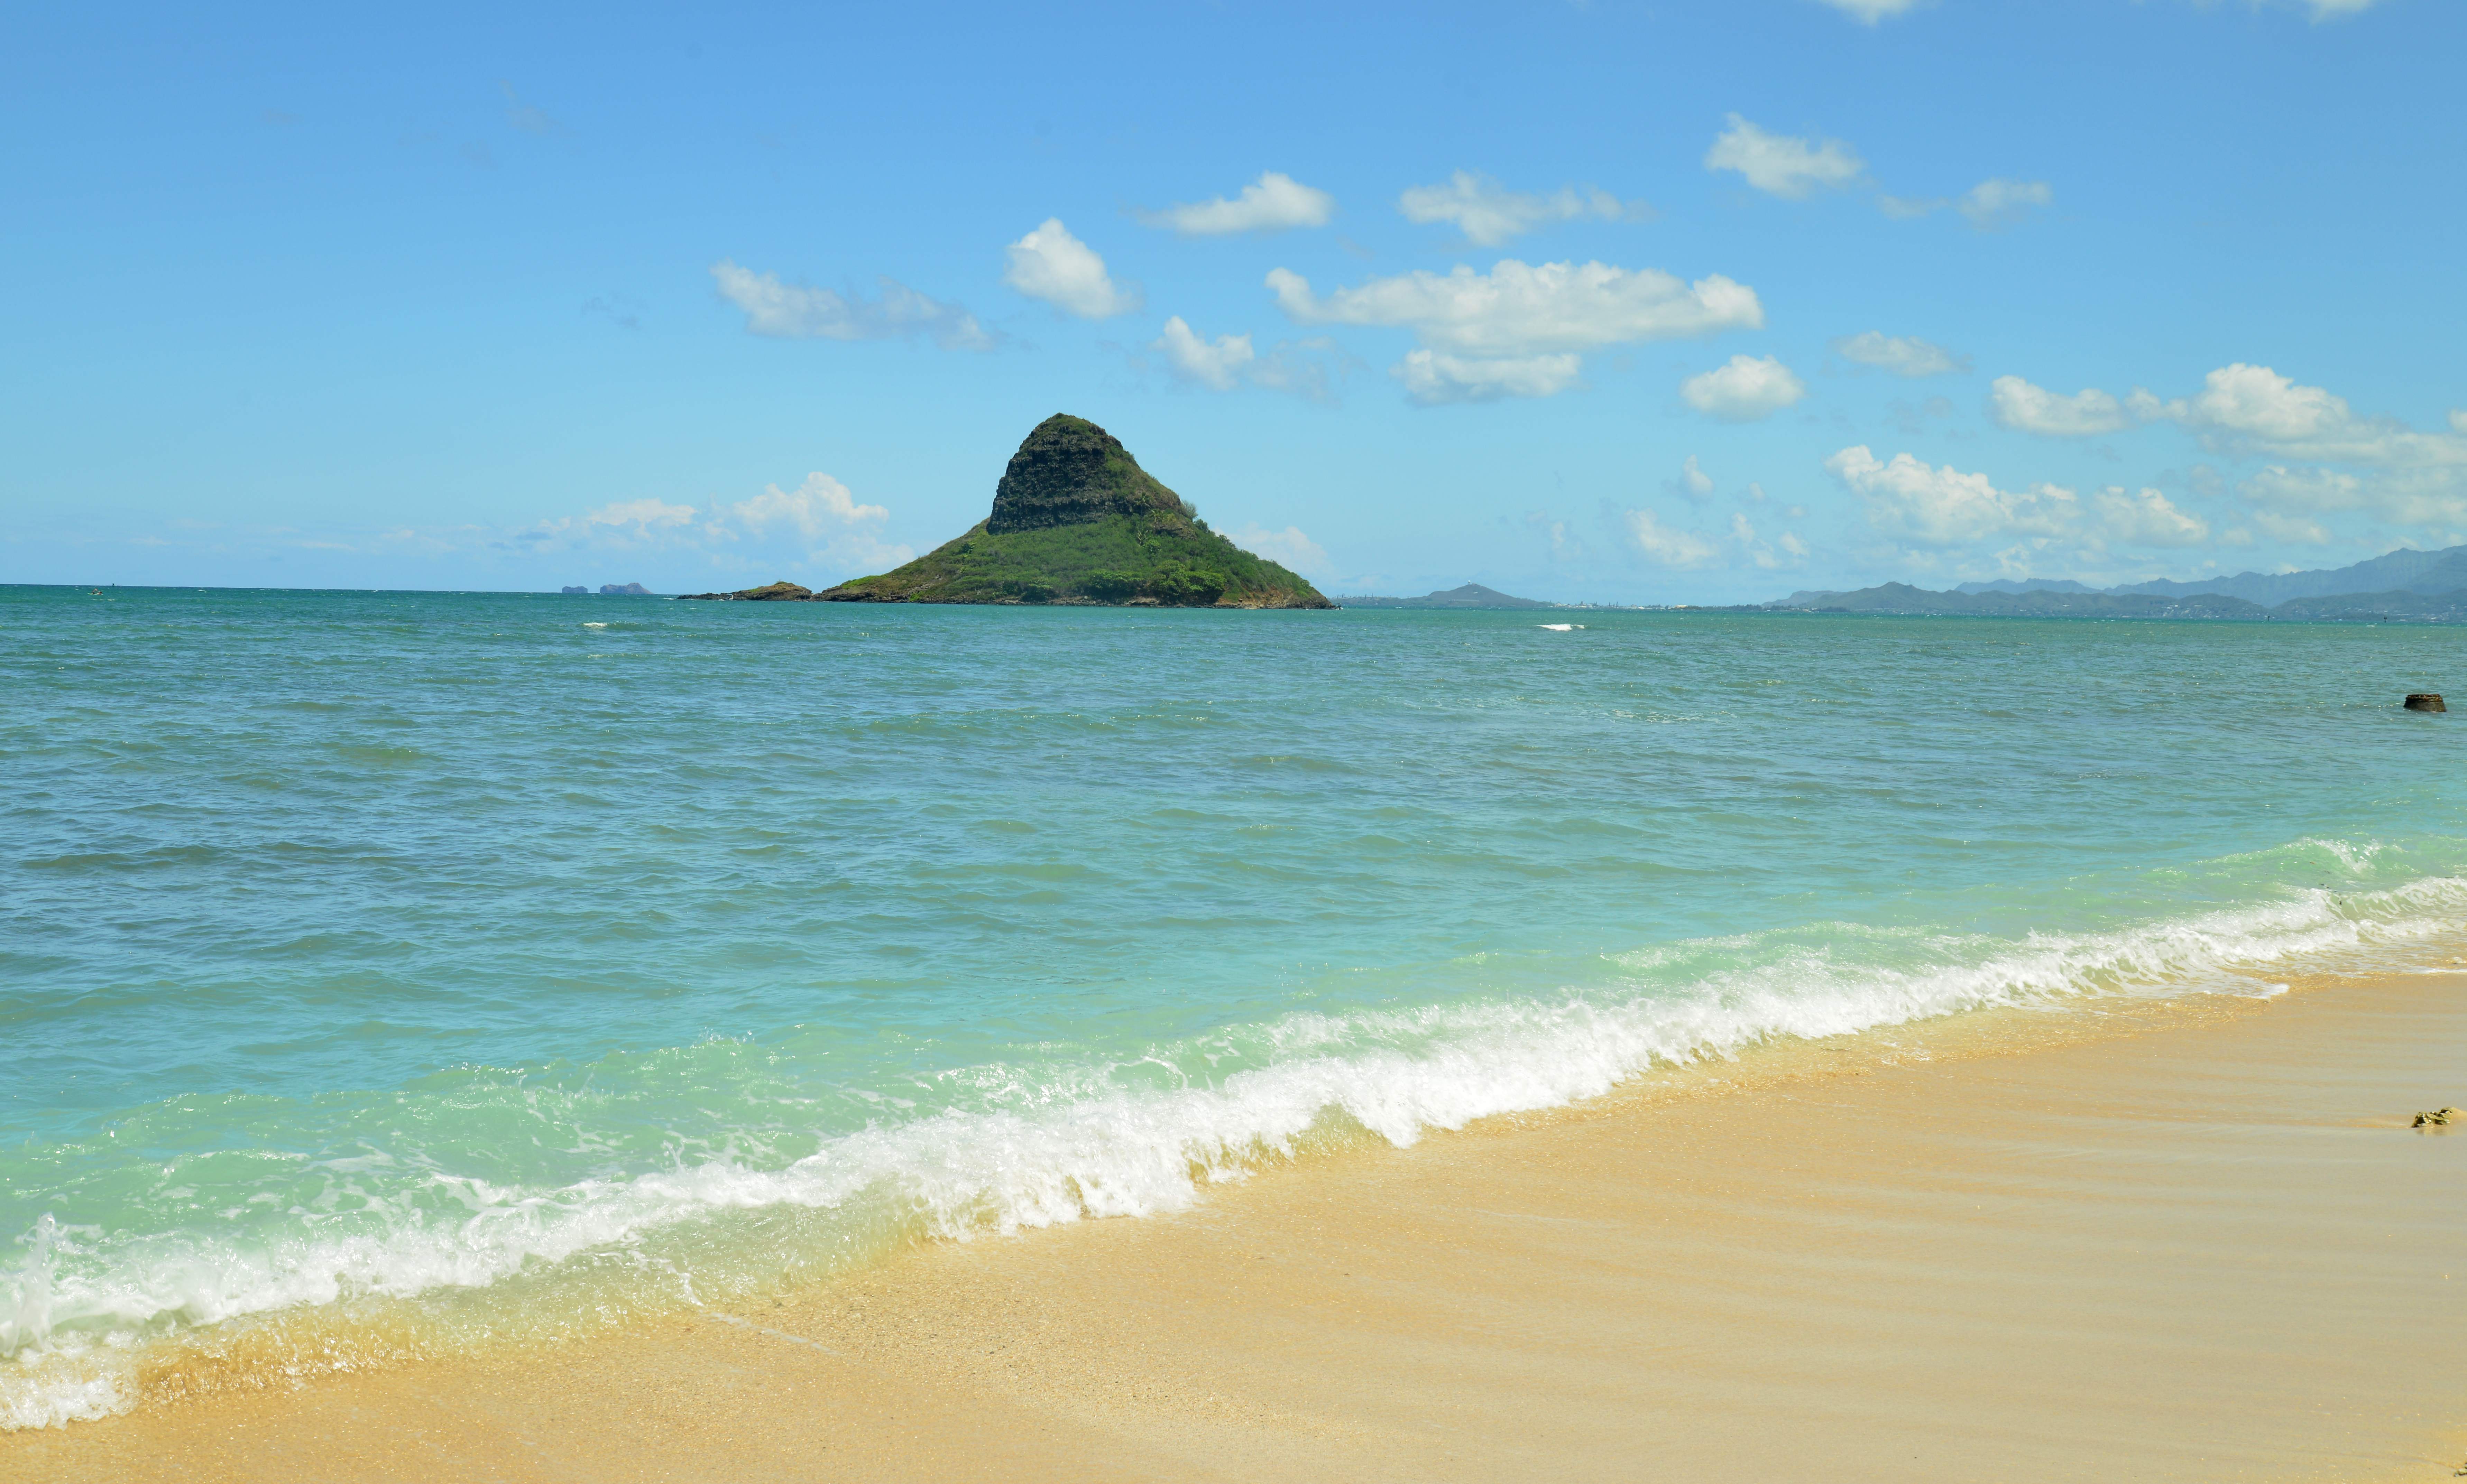 夏威夷海边风景图片高清桌面壁纸_桌面壁纸_mm4000图片大全